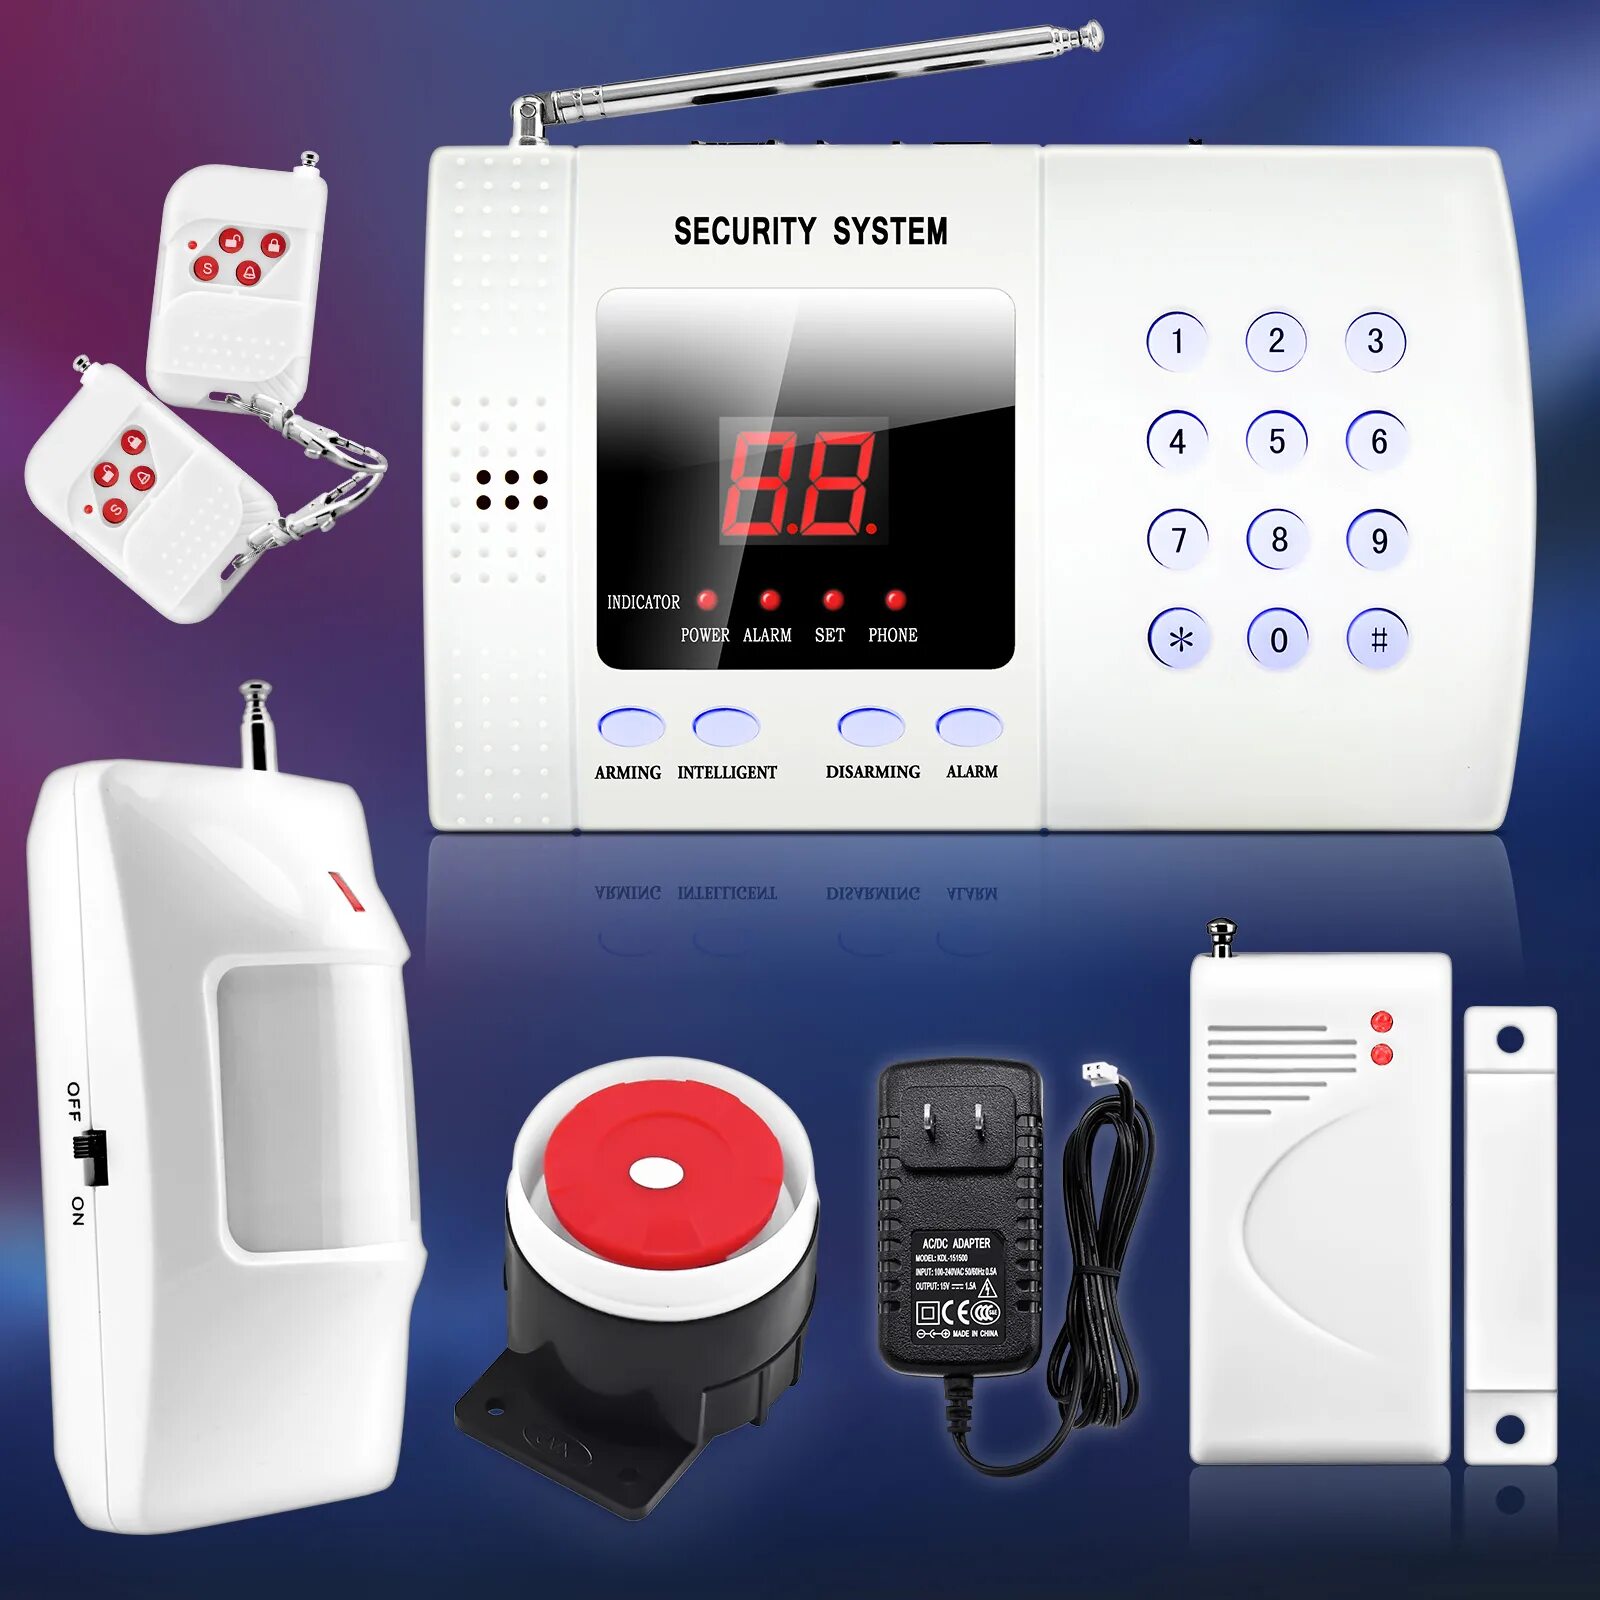 Gsm alarm. Охранная сигнализация Smart Unit gsm30a. Сигнализация Security Alarm System. GSM Smart Alarm System сигнализации. Охранная система секьюрити Аларм.